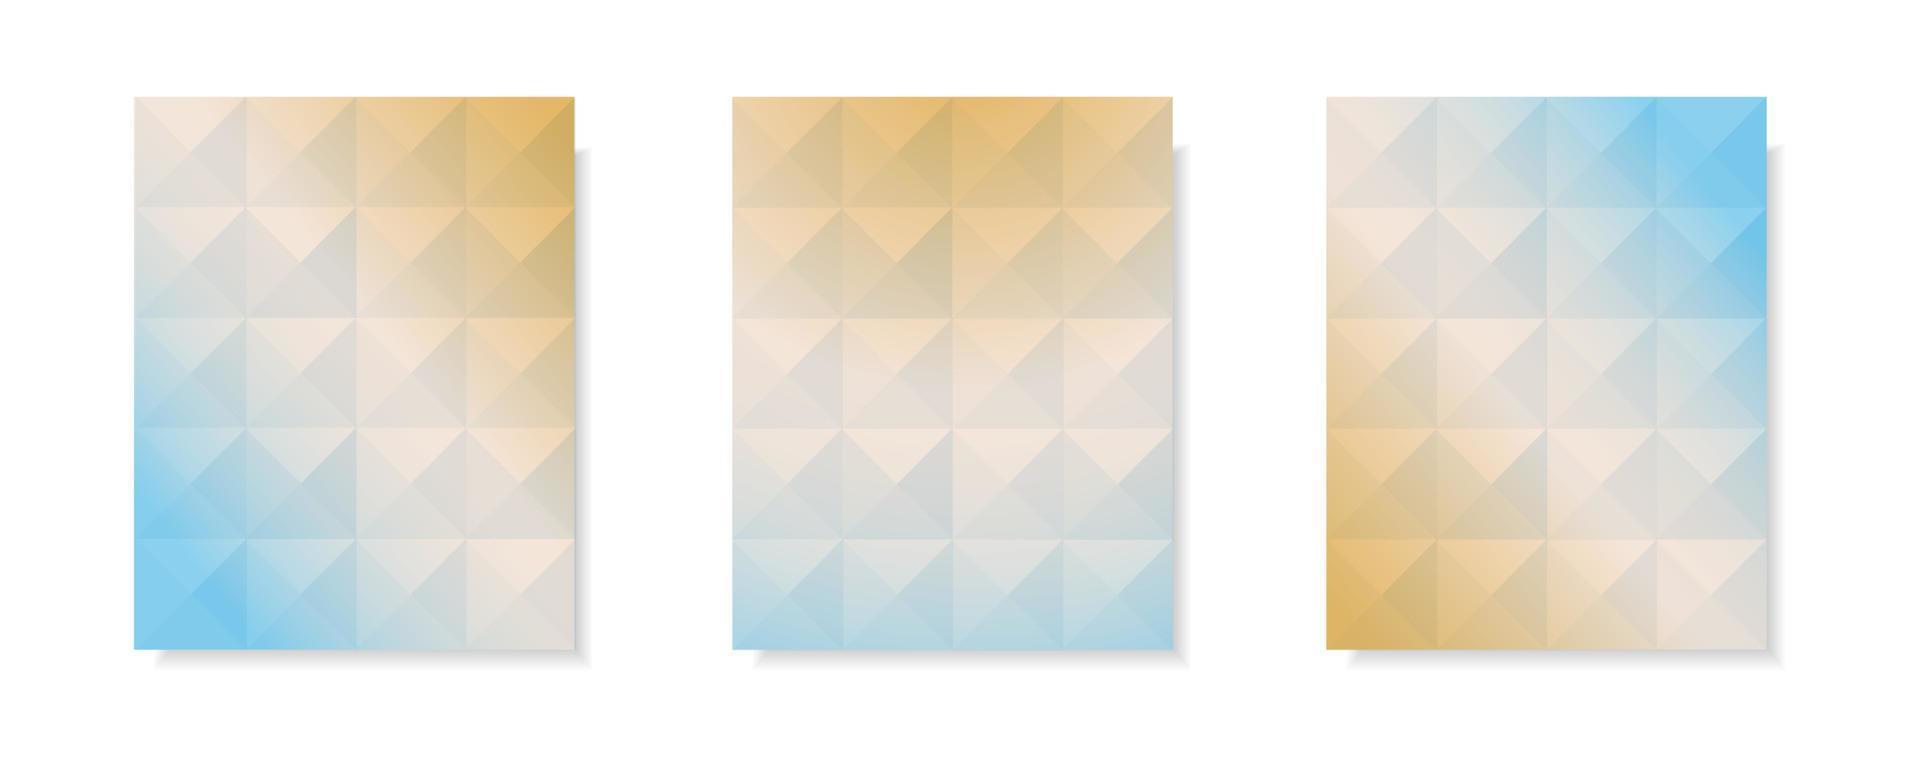 Reihe von abstrakten mehrfarbigen Gradienten-Vektor-Cover-Hintergründen. Dreiecksmusterdesign mit Kristallformstil für Geschäftsbroschürenhintergrund, Poster und Grafikdesign. Illustrationsvorlage vektor